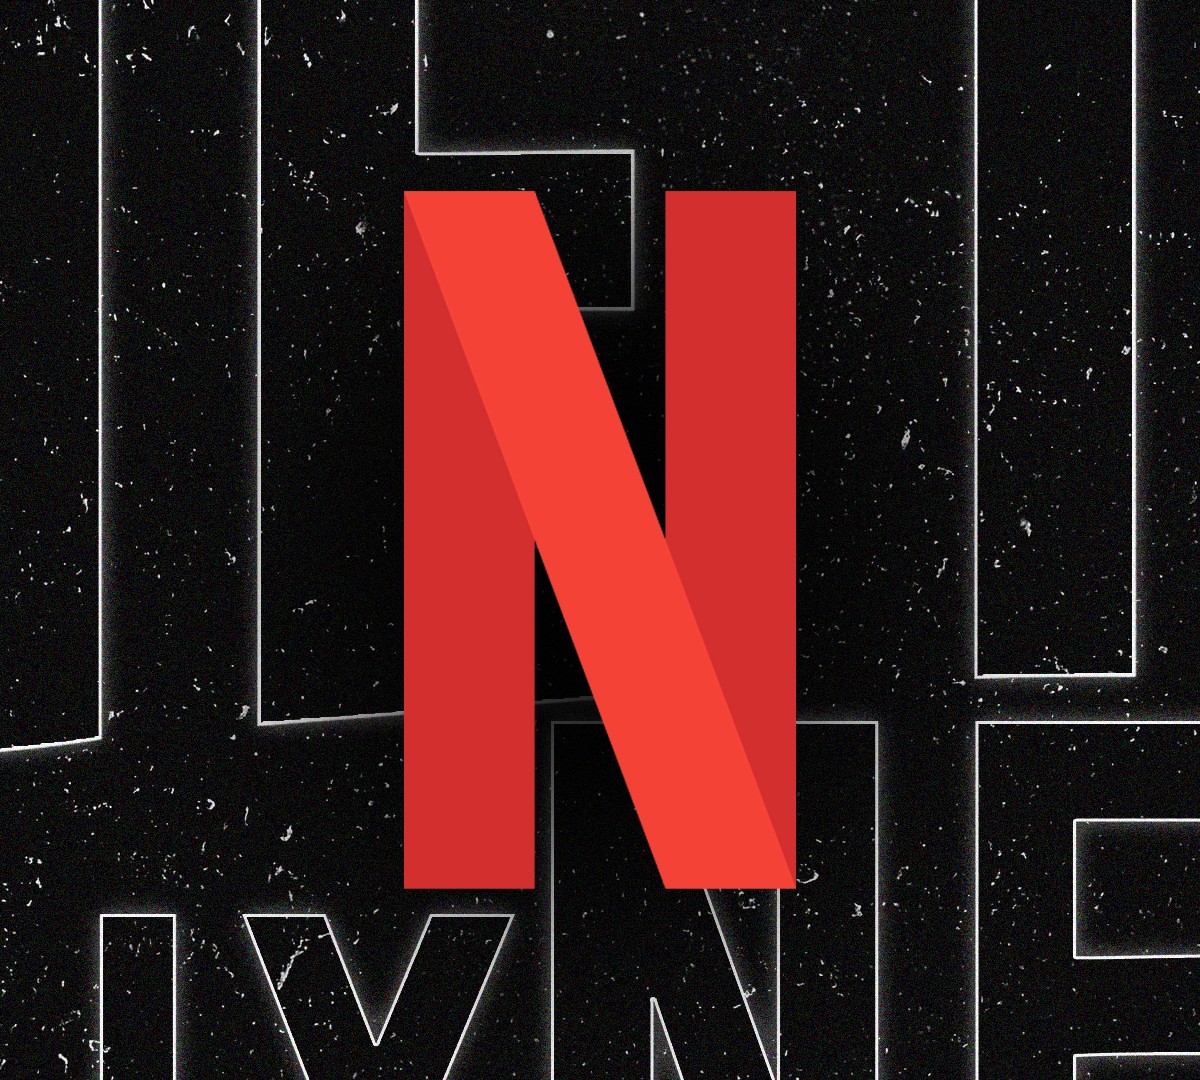 Estratégia da Netflix: Por que ela cancela séries originais? - AAA